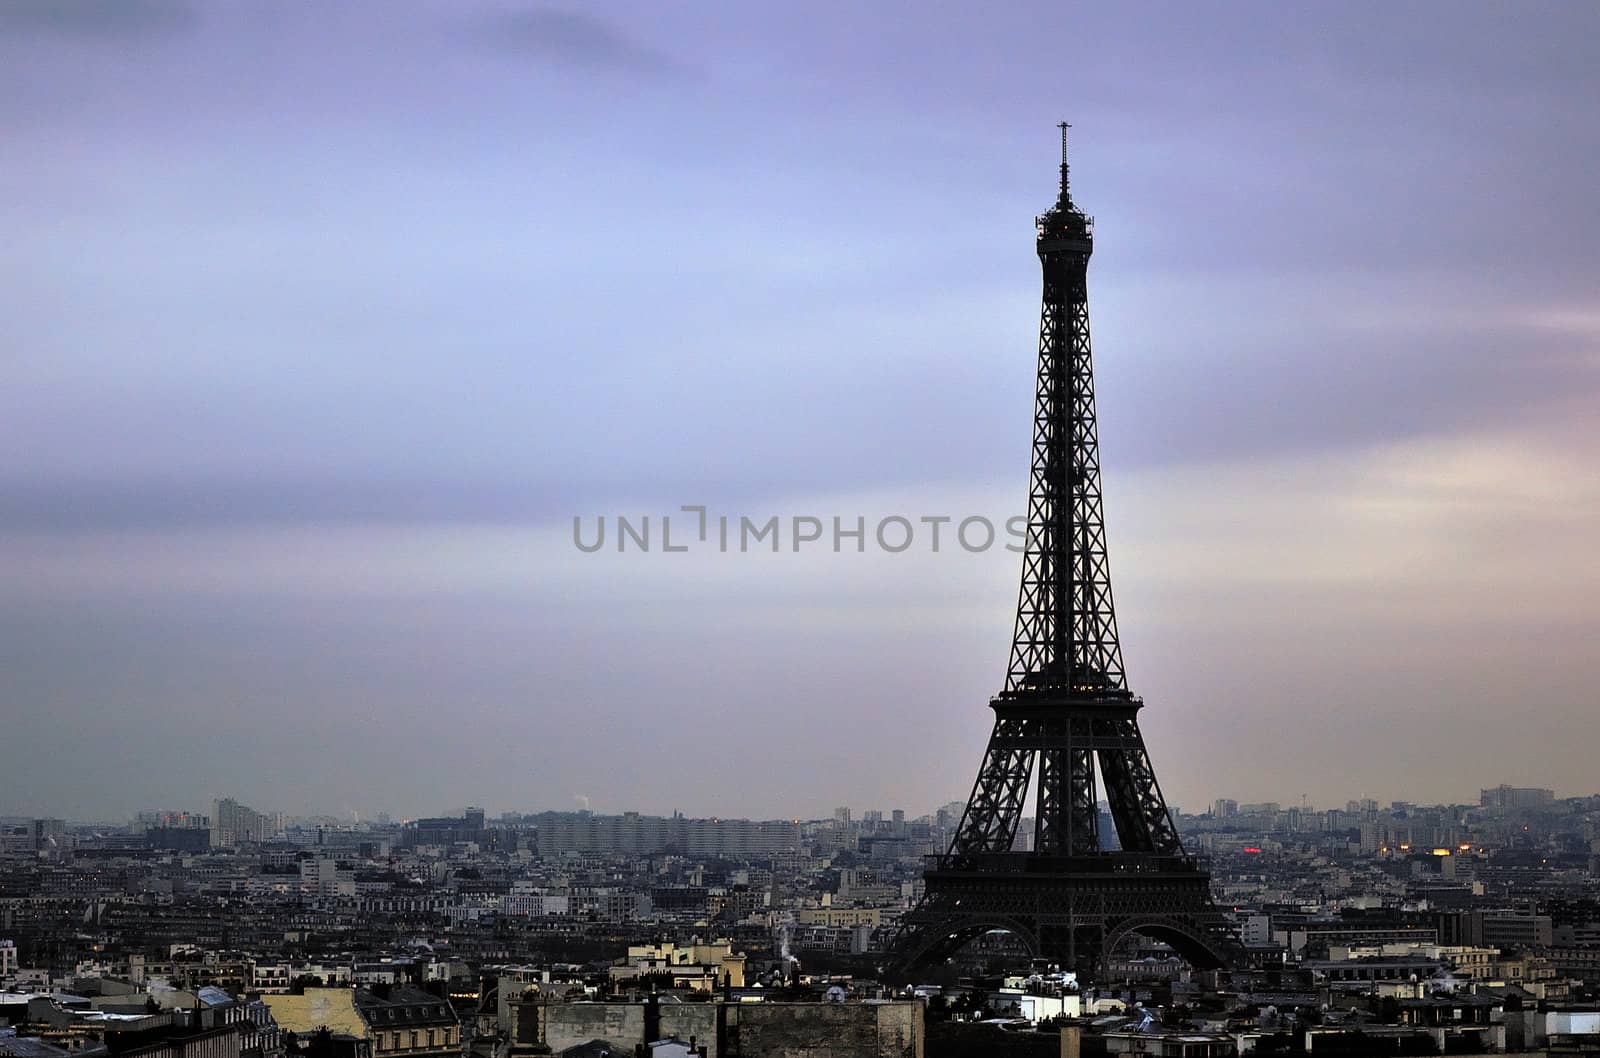  Eiffel Tower by jmffotos